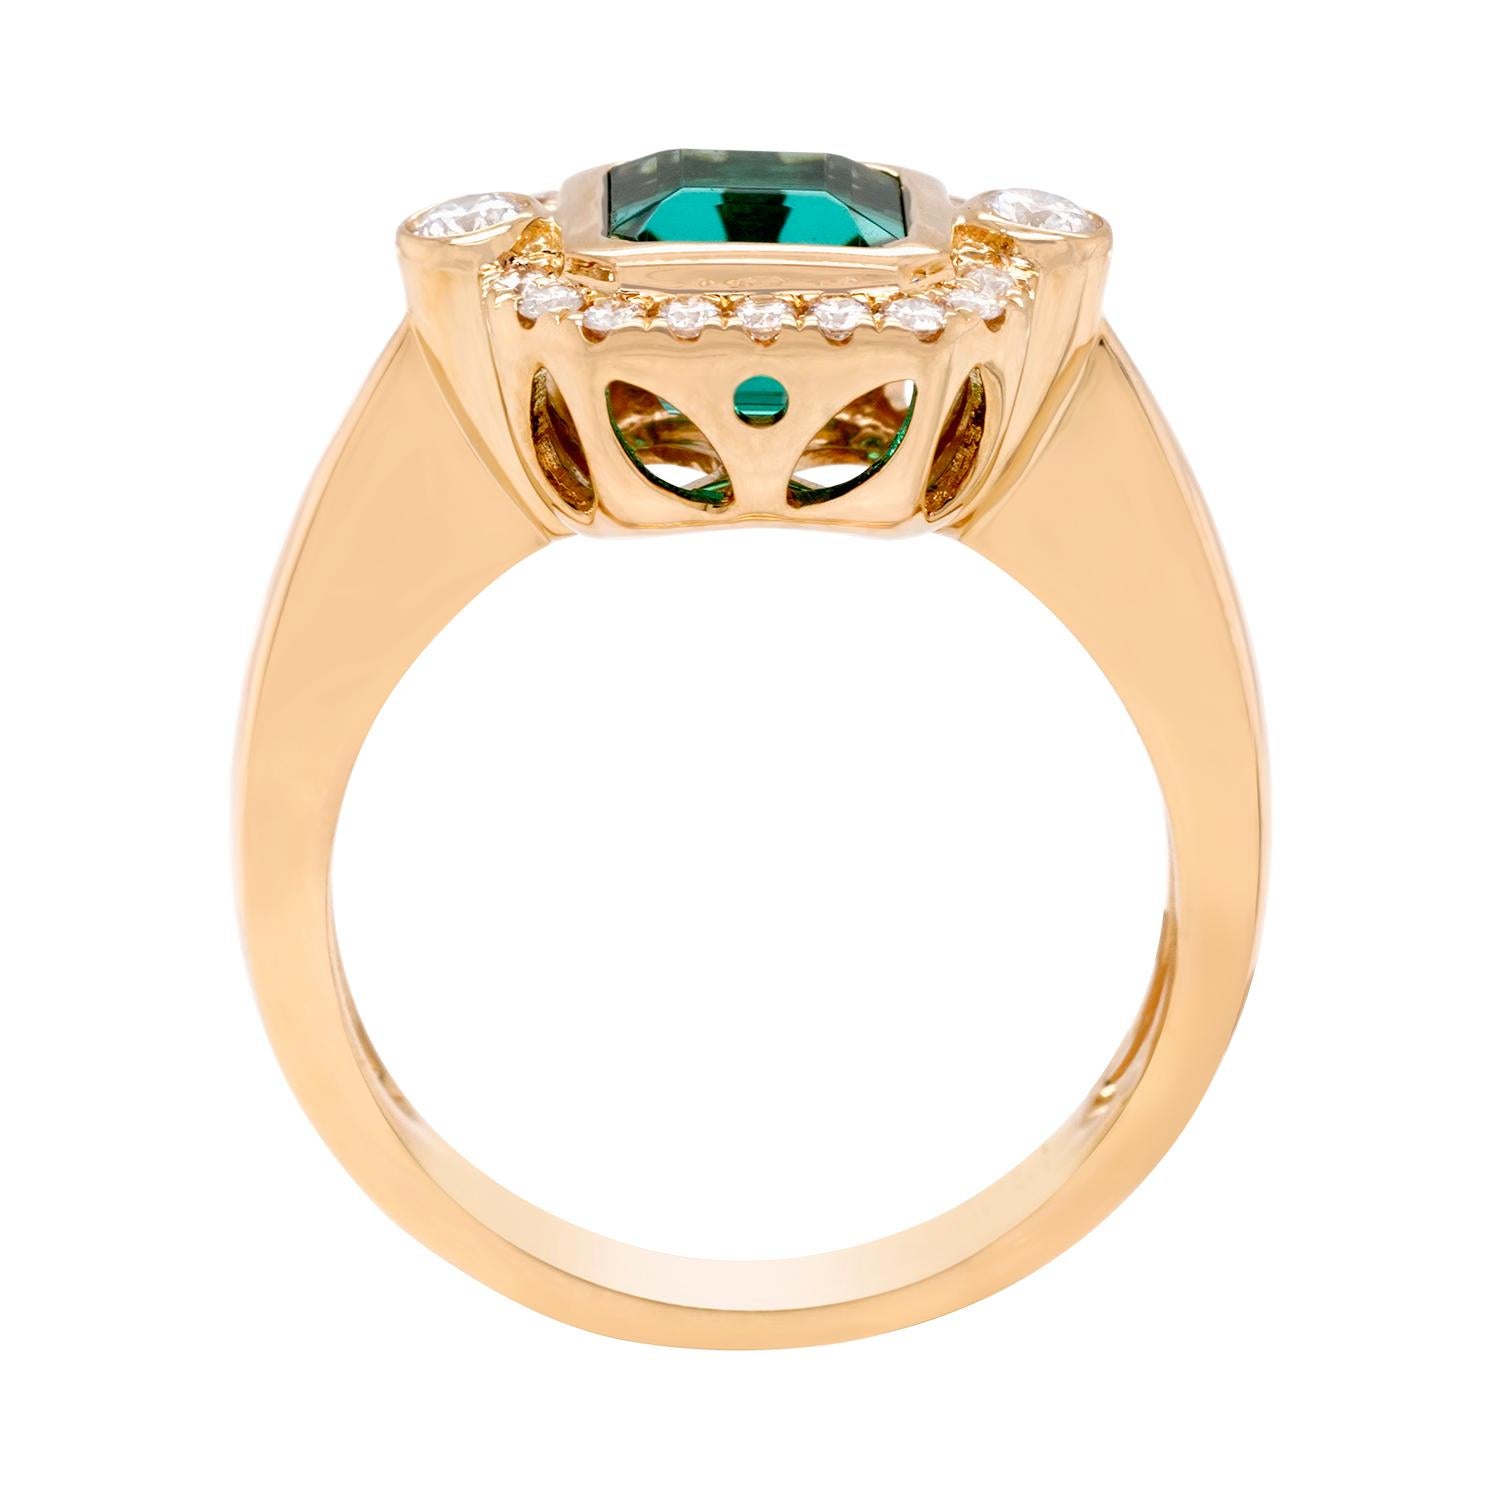 Dieser Ring aus 14-karätigem Gelbgold ist eine wunderbare Verbindung von zeitlosem und modernem Stil. Die zeitlose Mischung aus einem Turmalin im Kissenschliff und runden Diamanten funkelt und zieht garantiert alle Blicke auf sich.

Dieser Turmalin